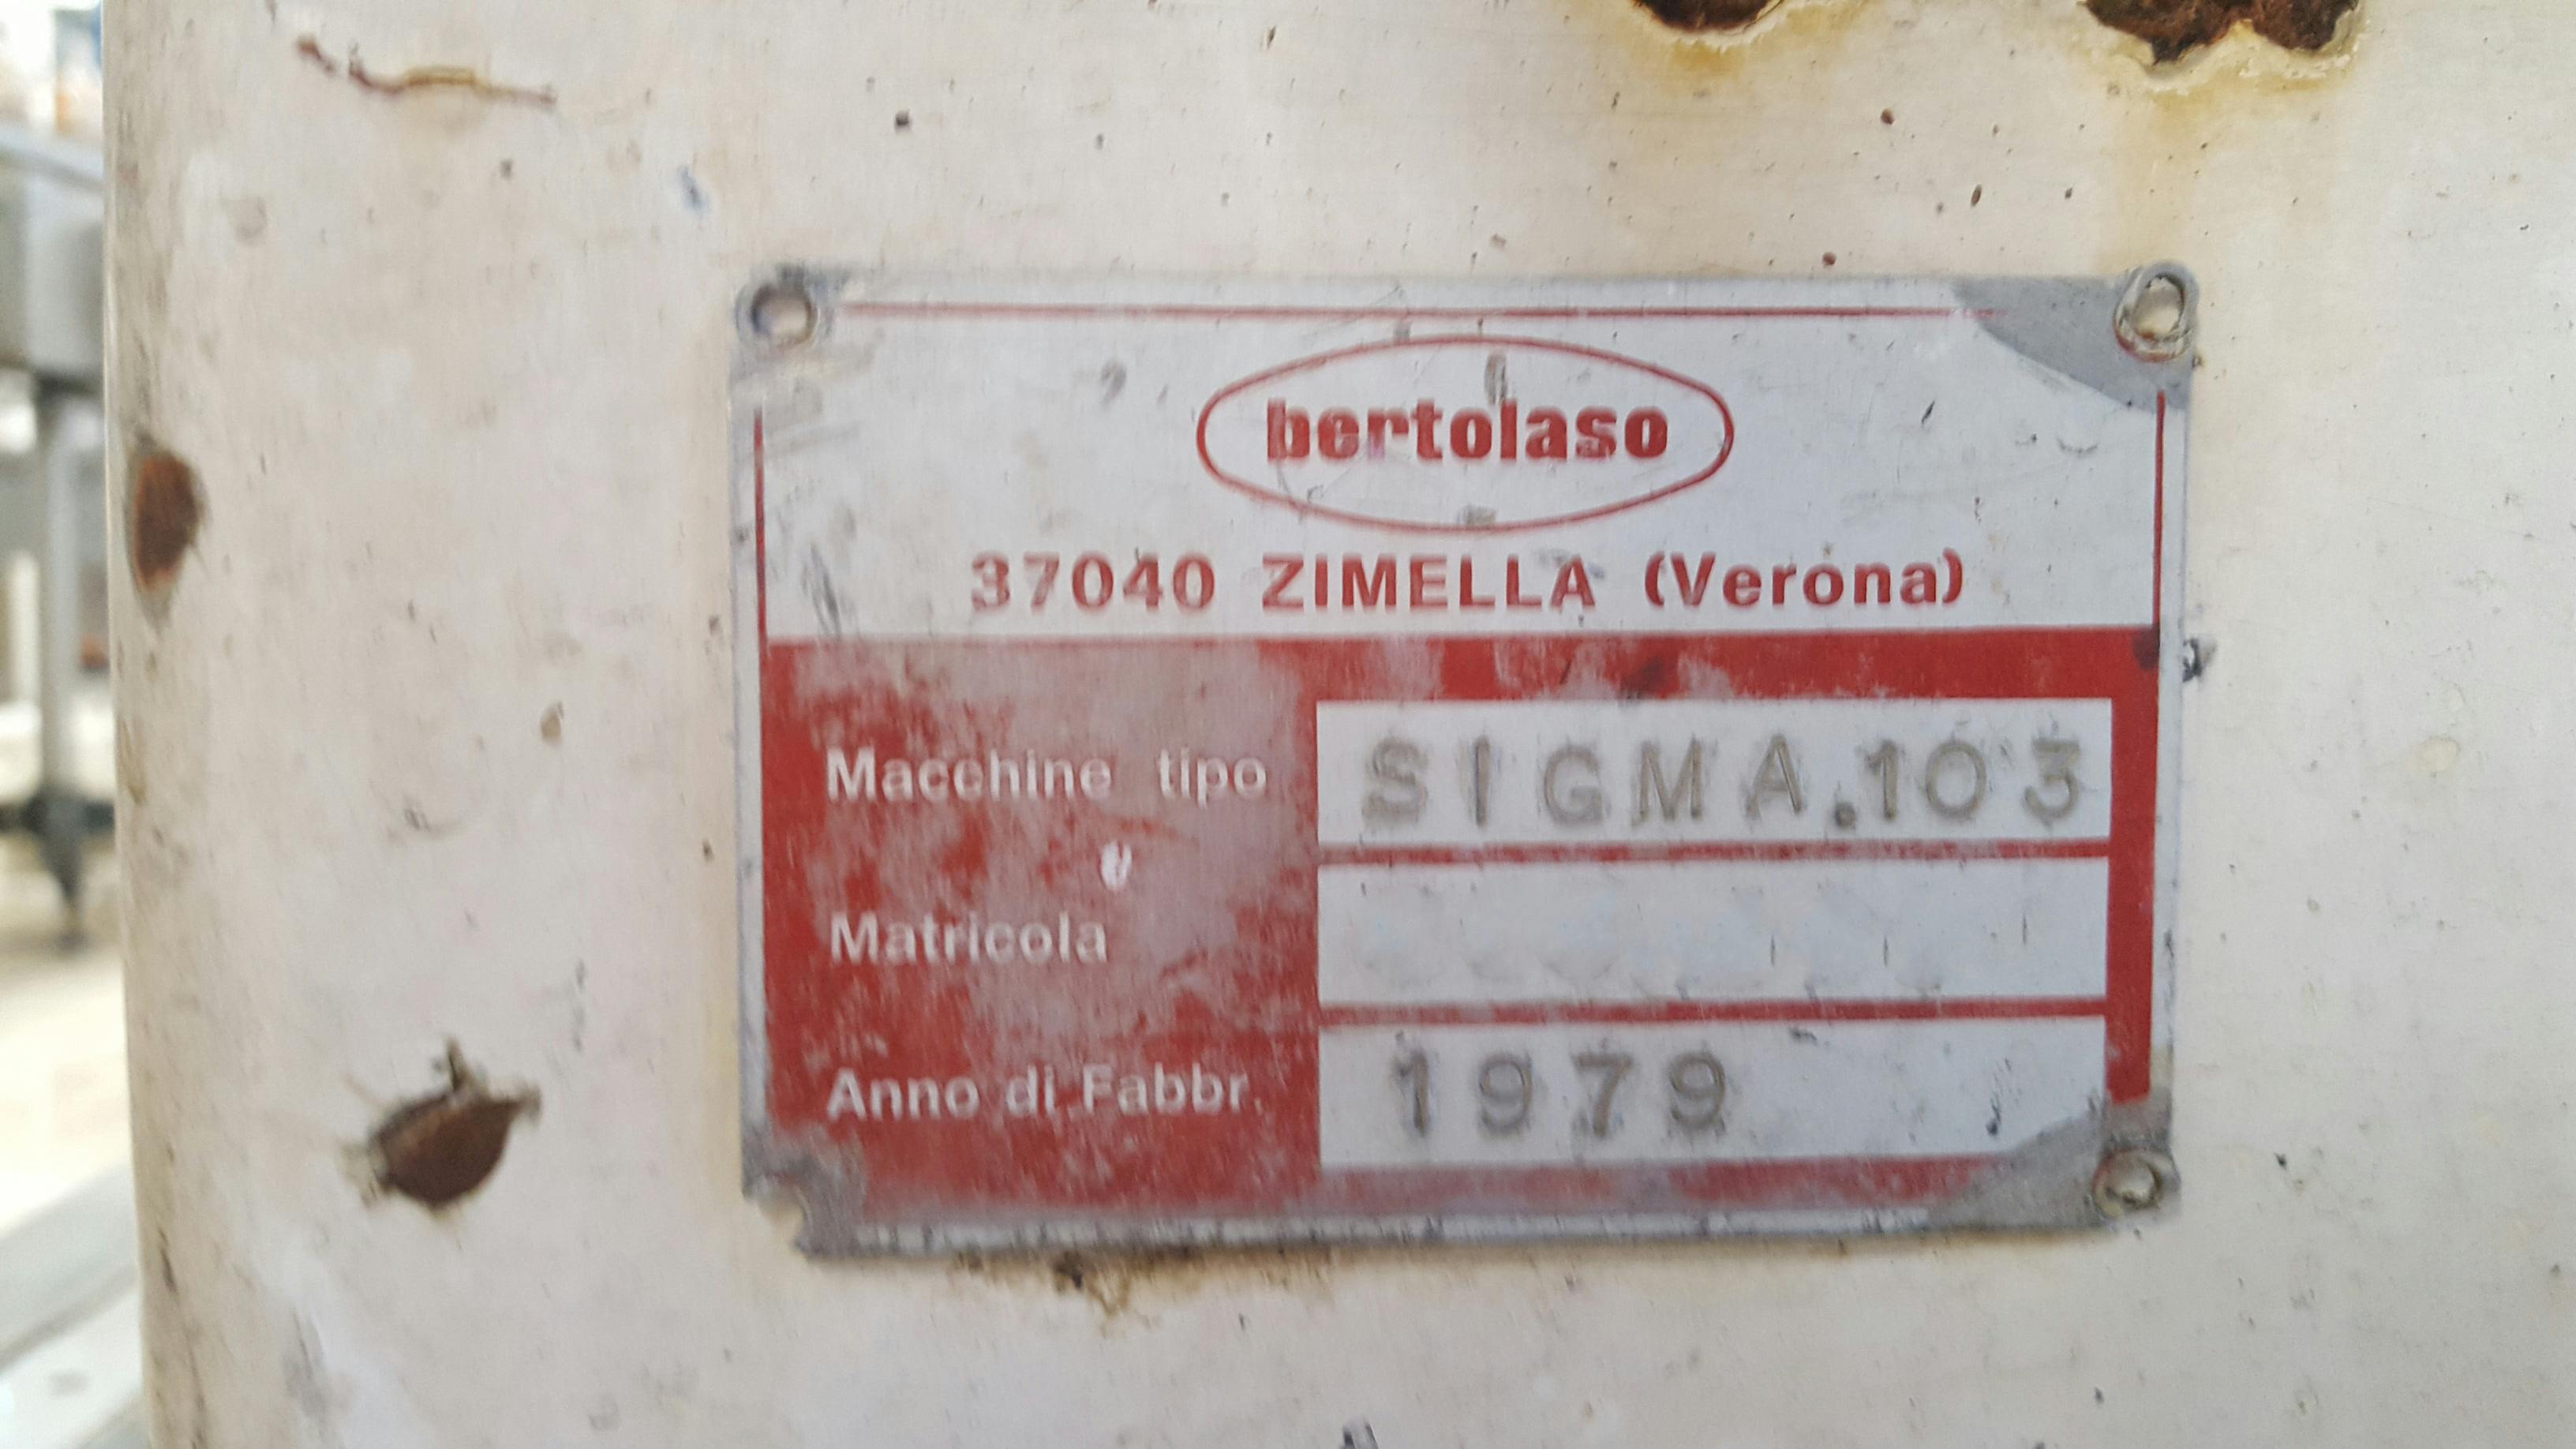 Targa dati of Bertolaso Sigma 103